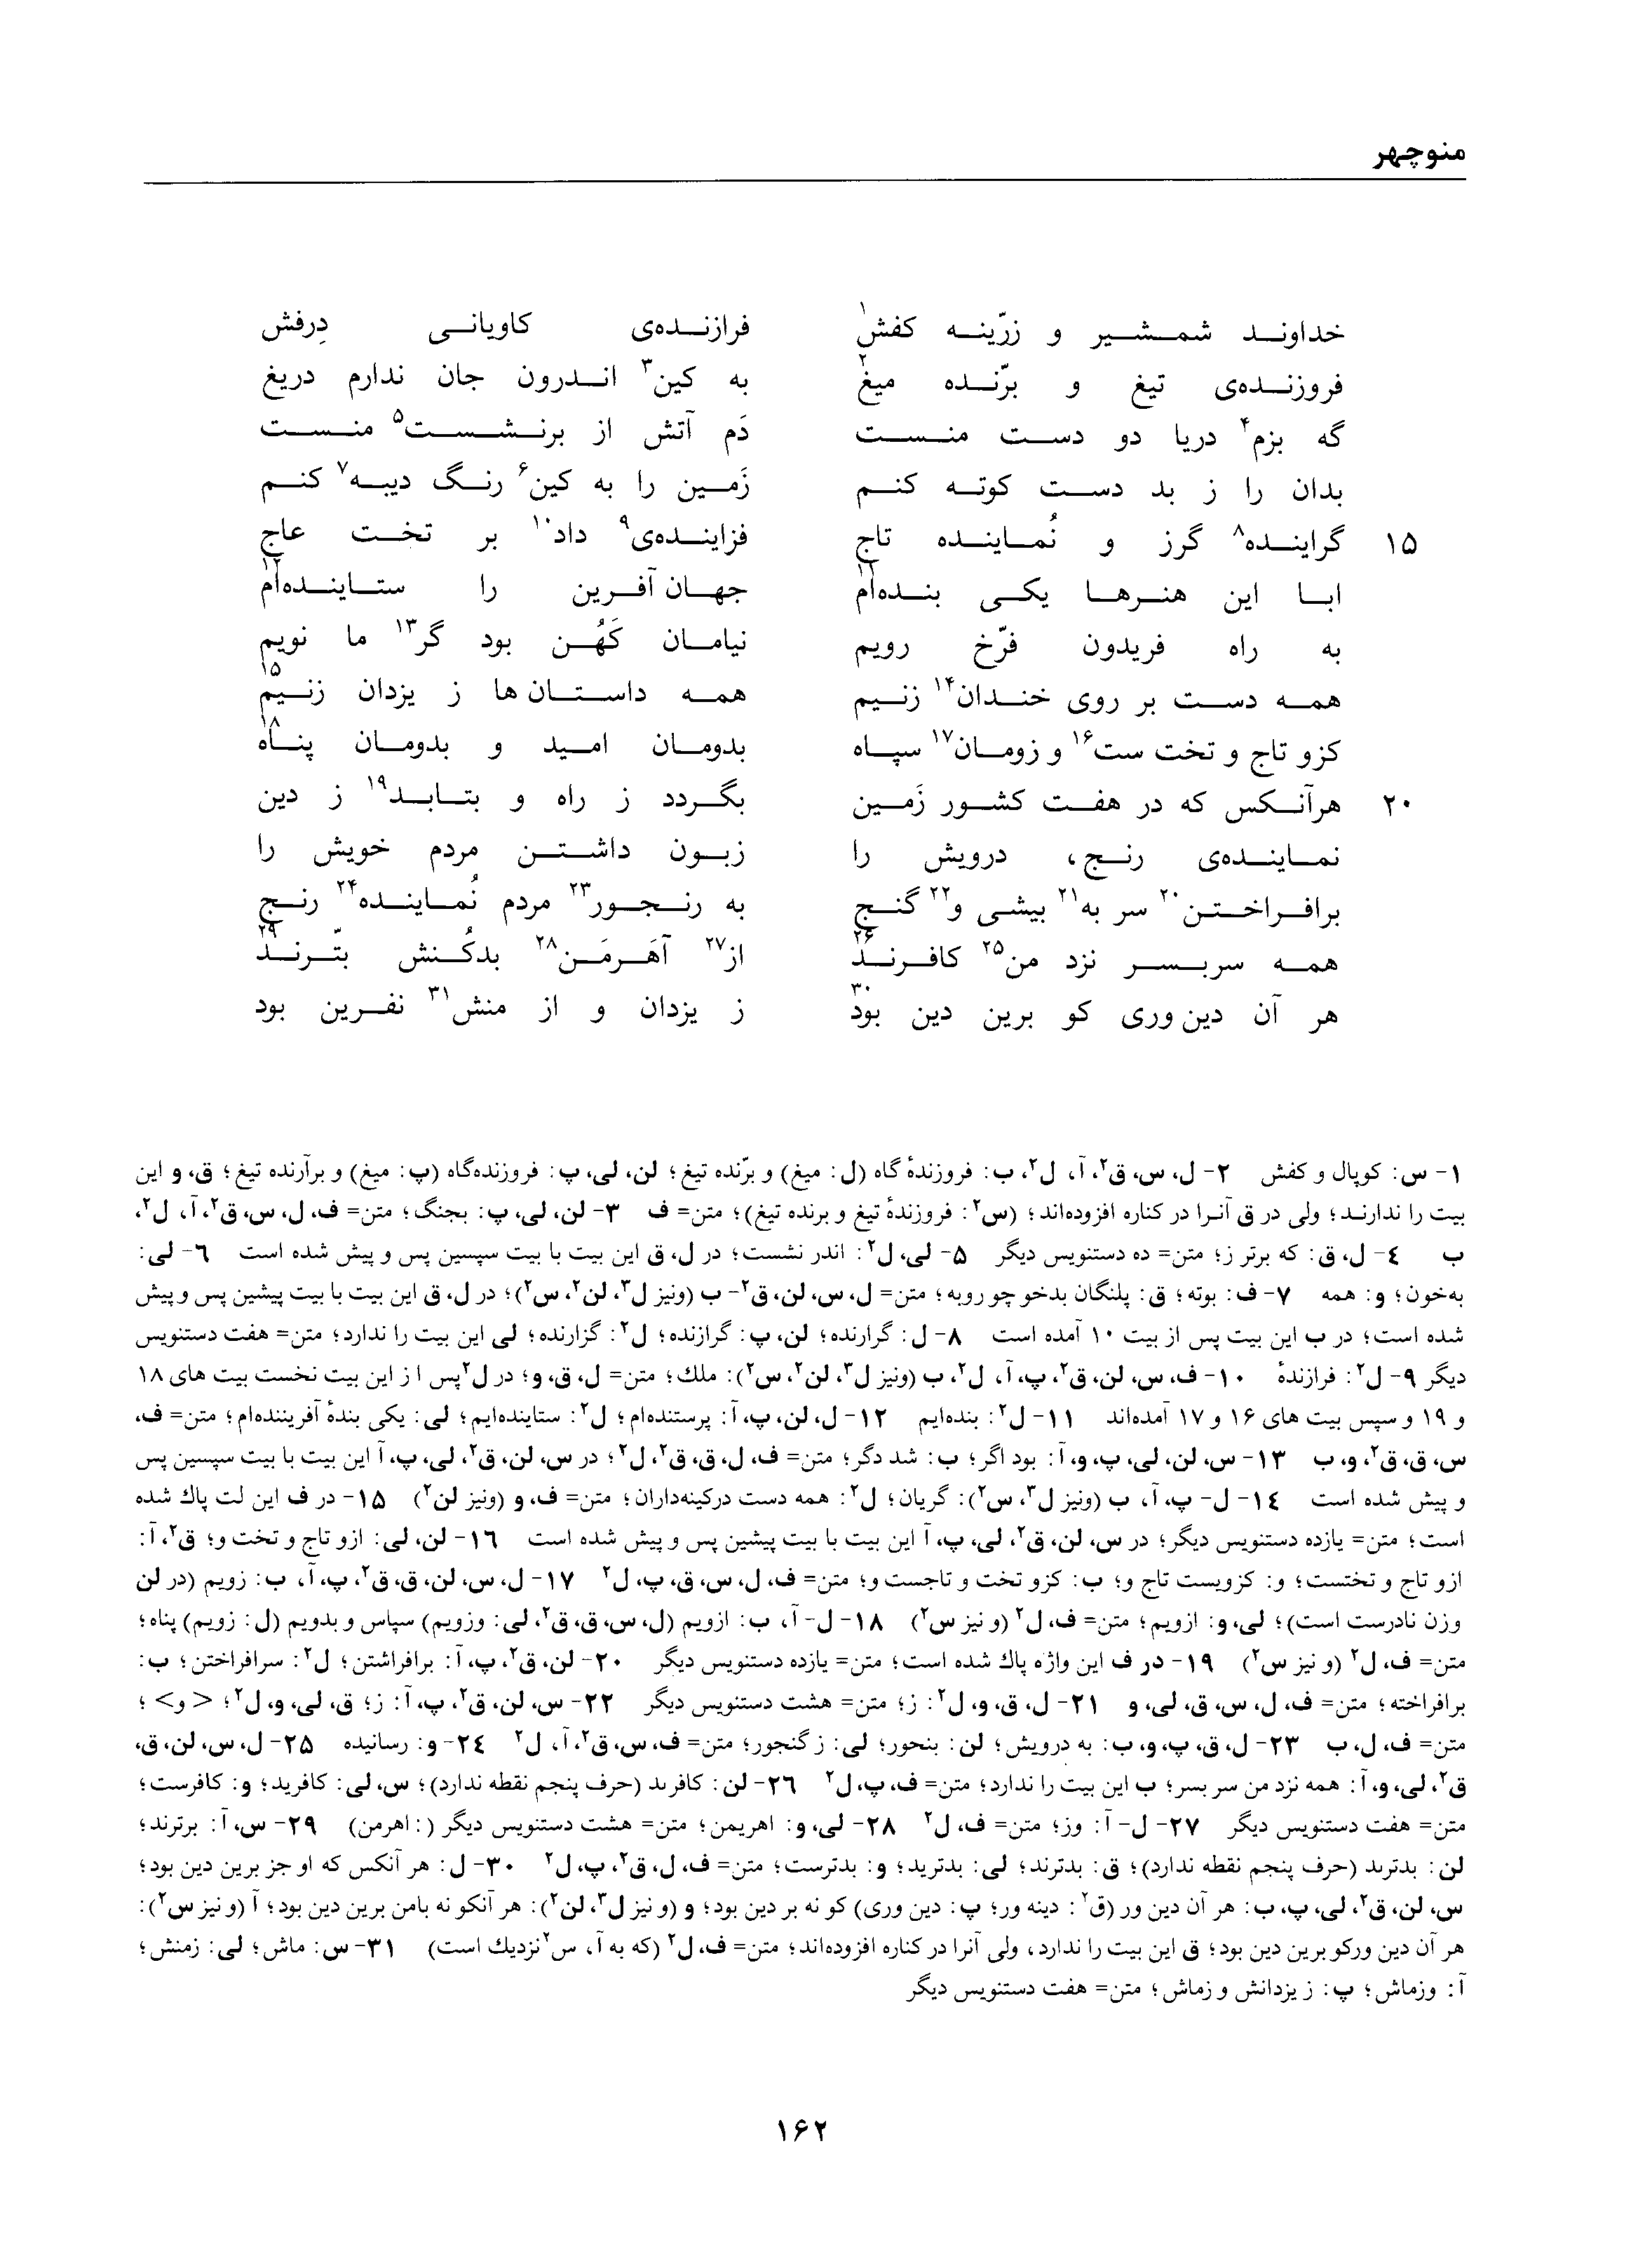 vol. 1, p. 162